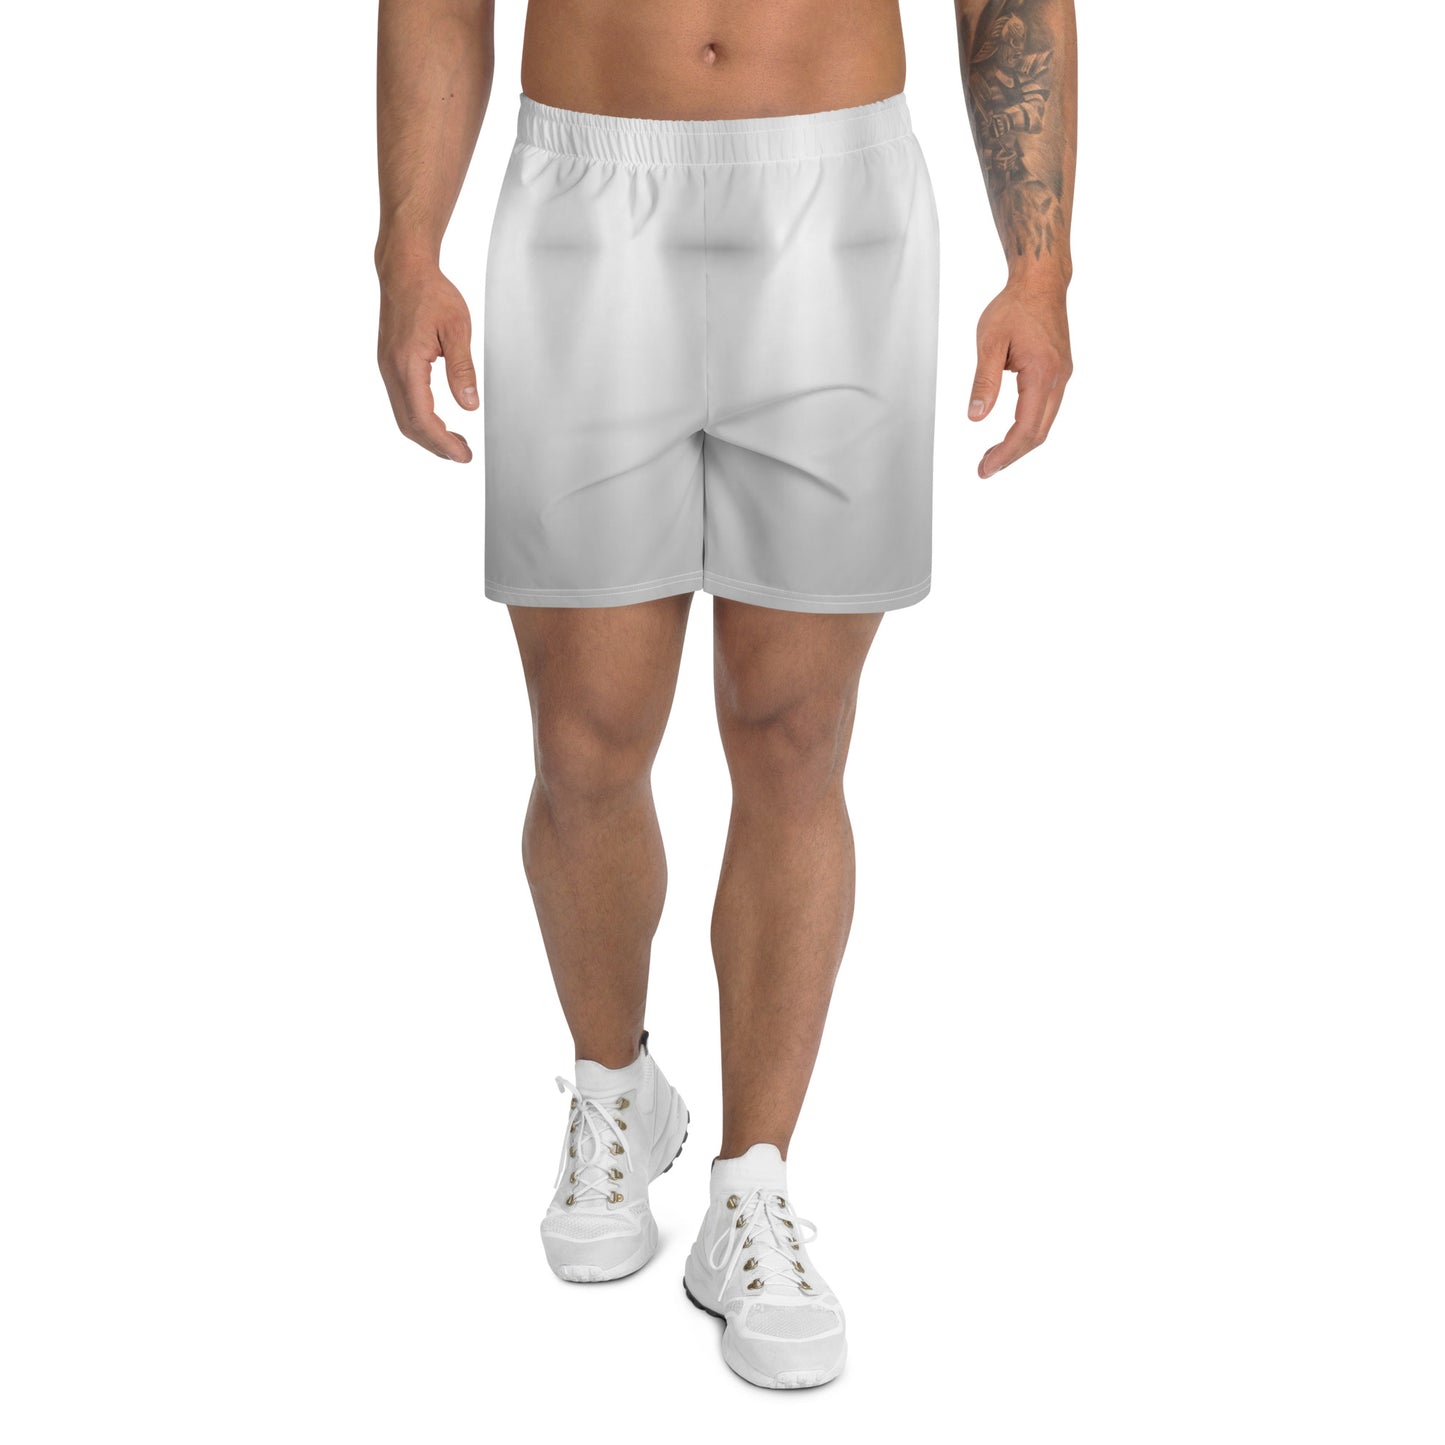 LBS Silver Spotlight Men's Athletic Long Shorts